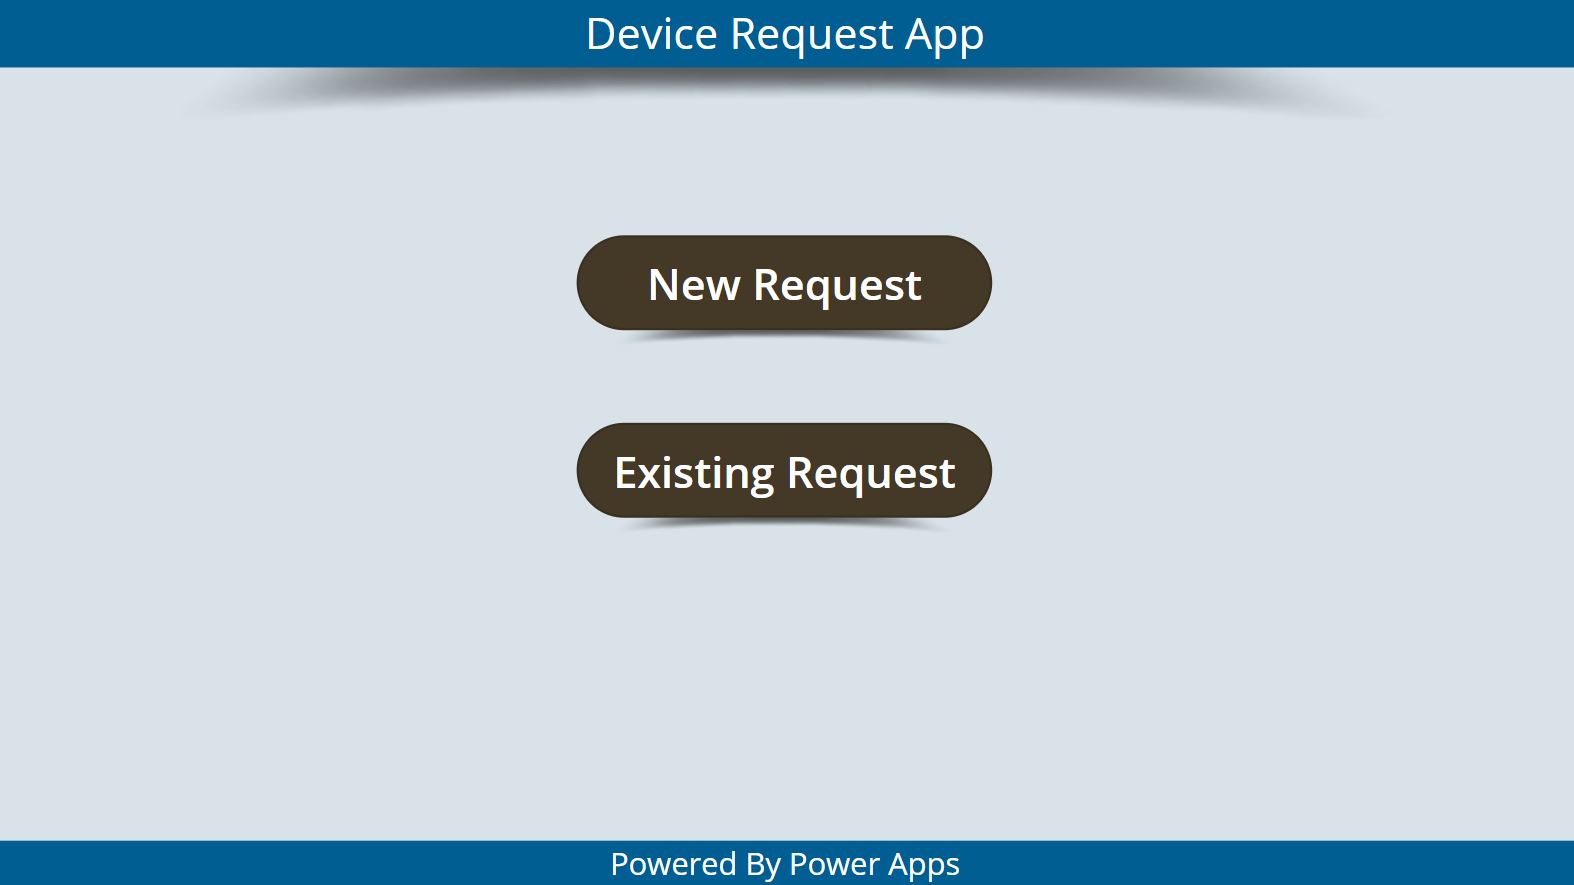 لقطة شاشة لتطبيق طلب الجهاز باستخدام زرين.